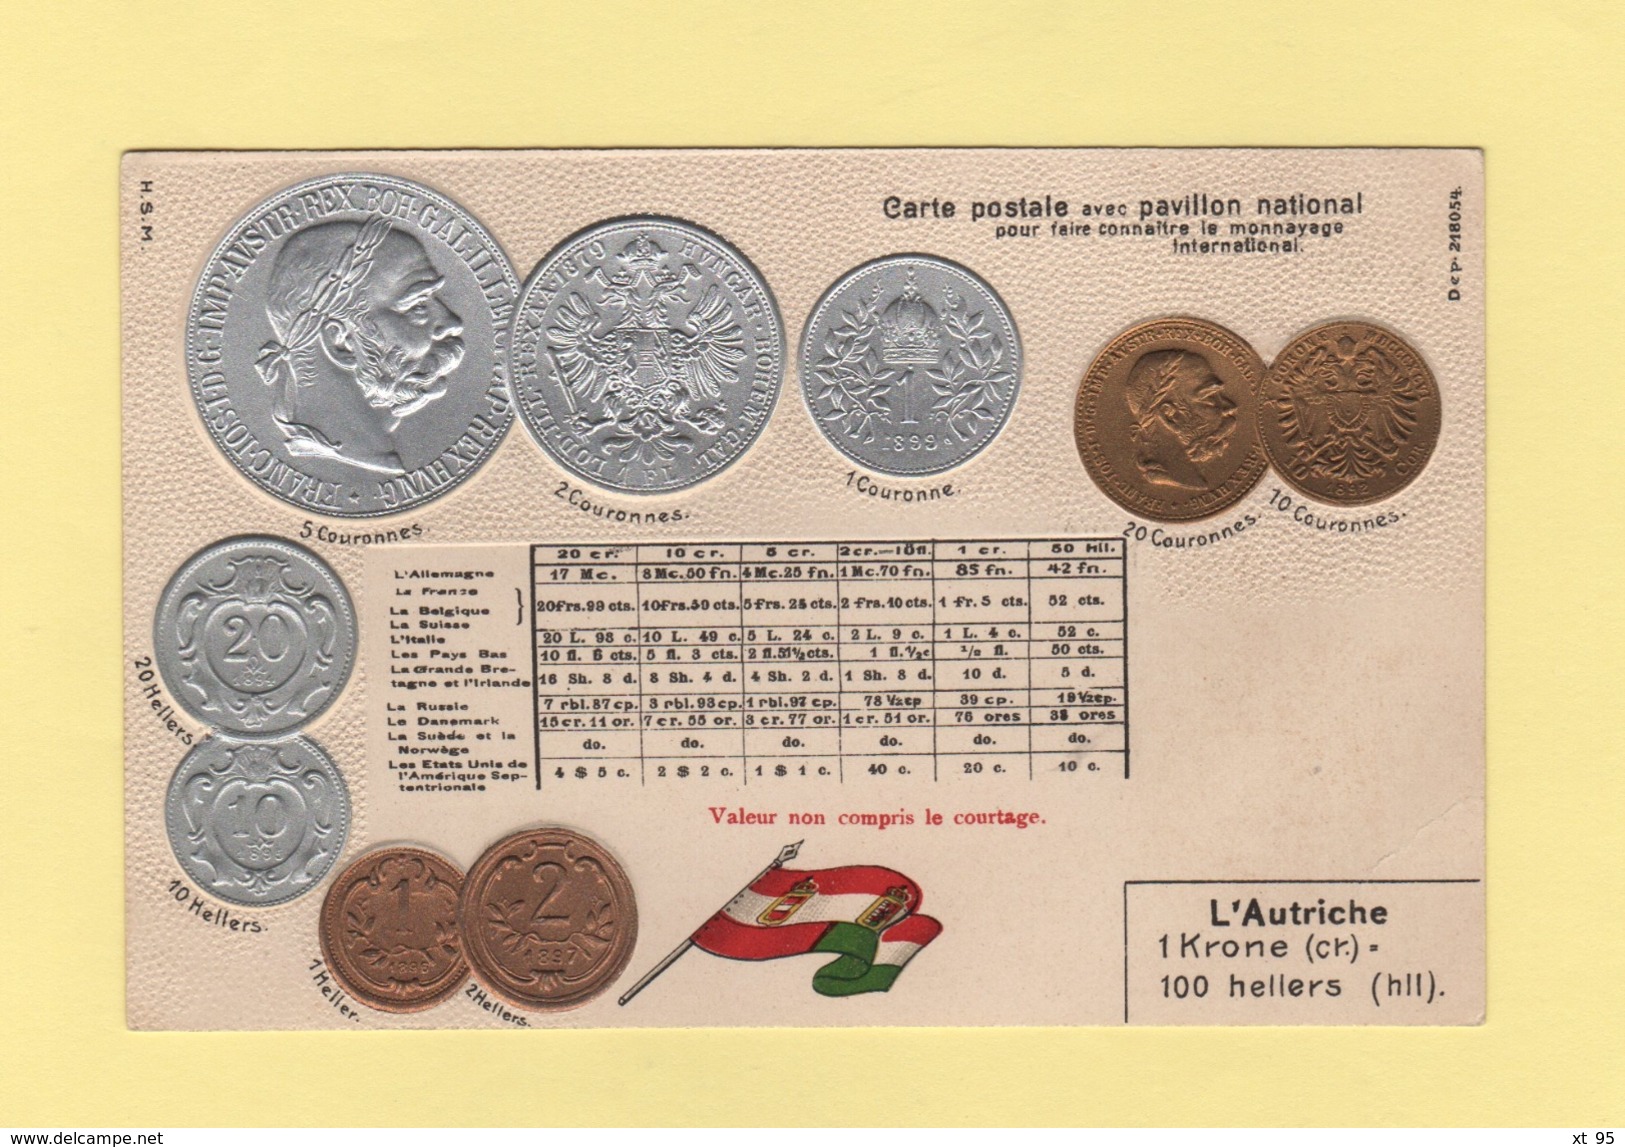 Pour Faire Connaitre Le Monnayage International - Pavillon National - L Autriche - Coins (pictures)